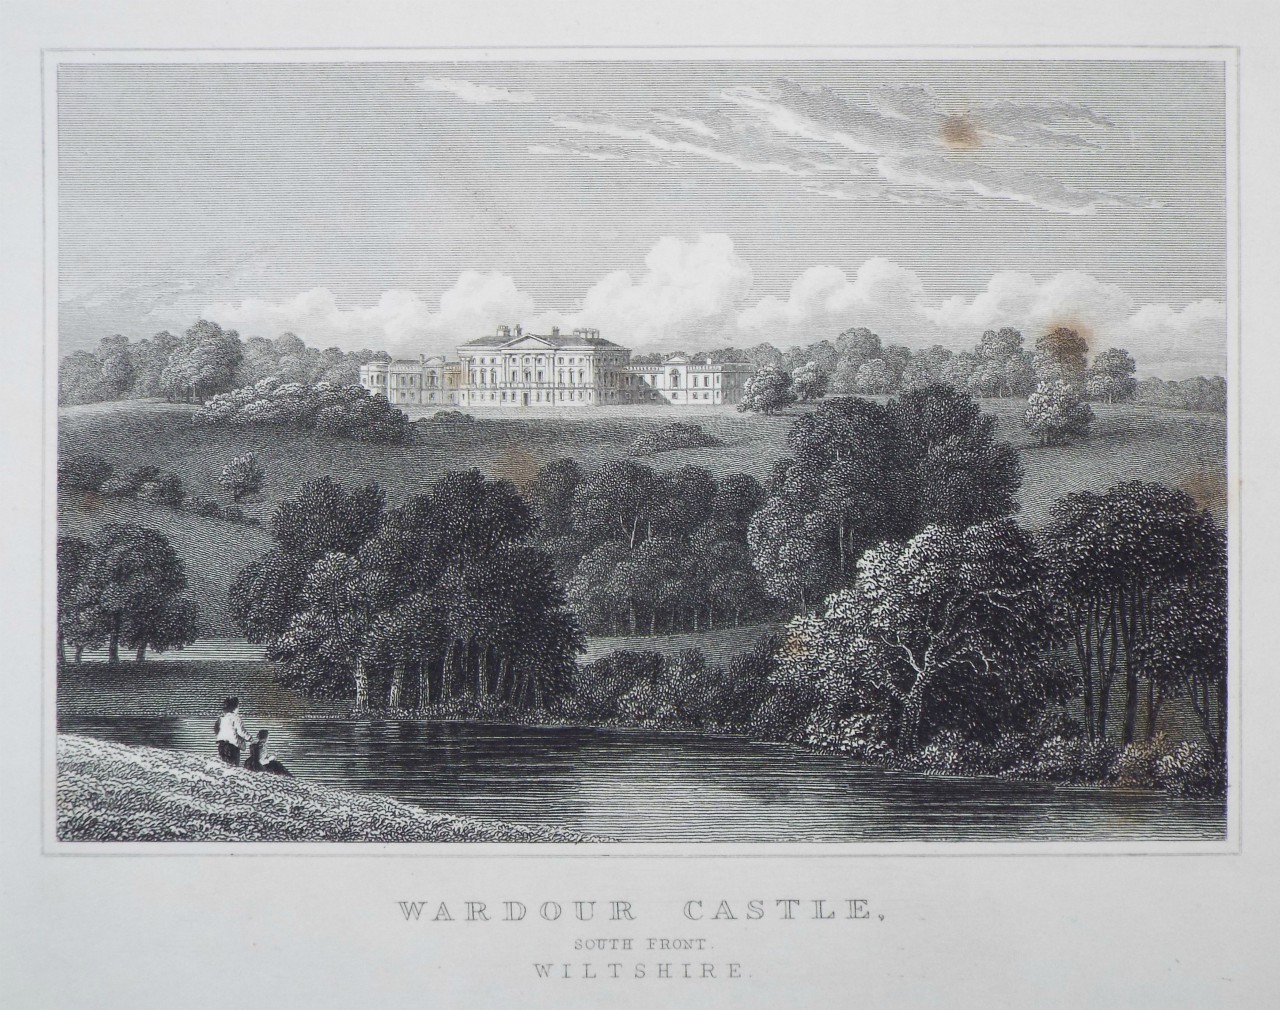 Print - Wardour Castle, South Front, Wiltshire. - Byrne